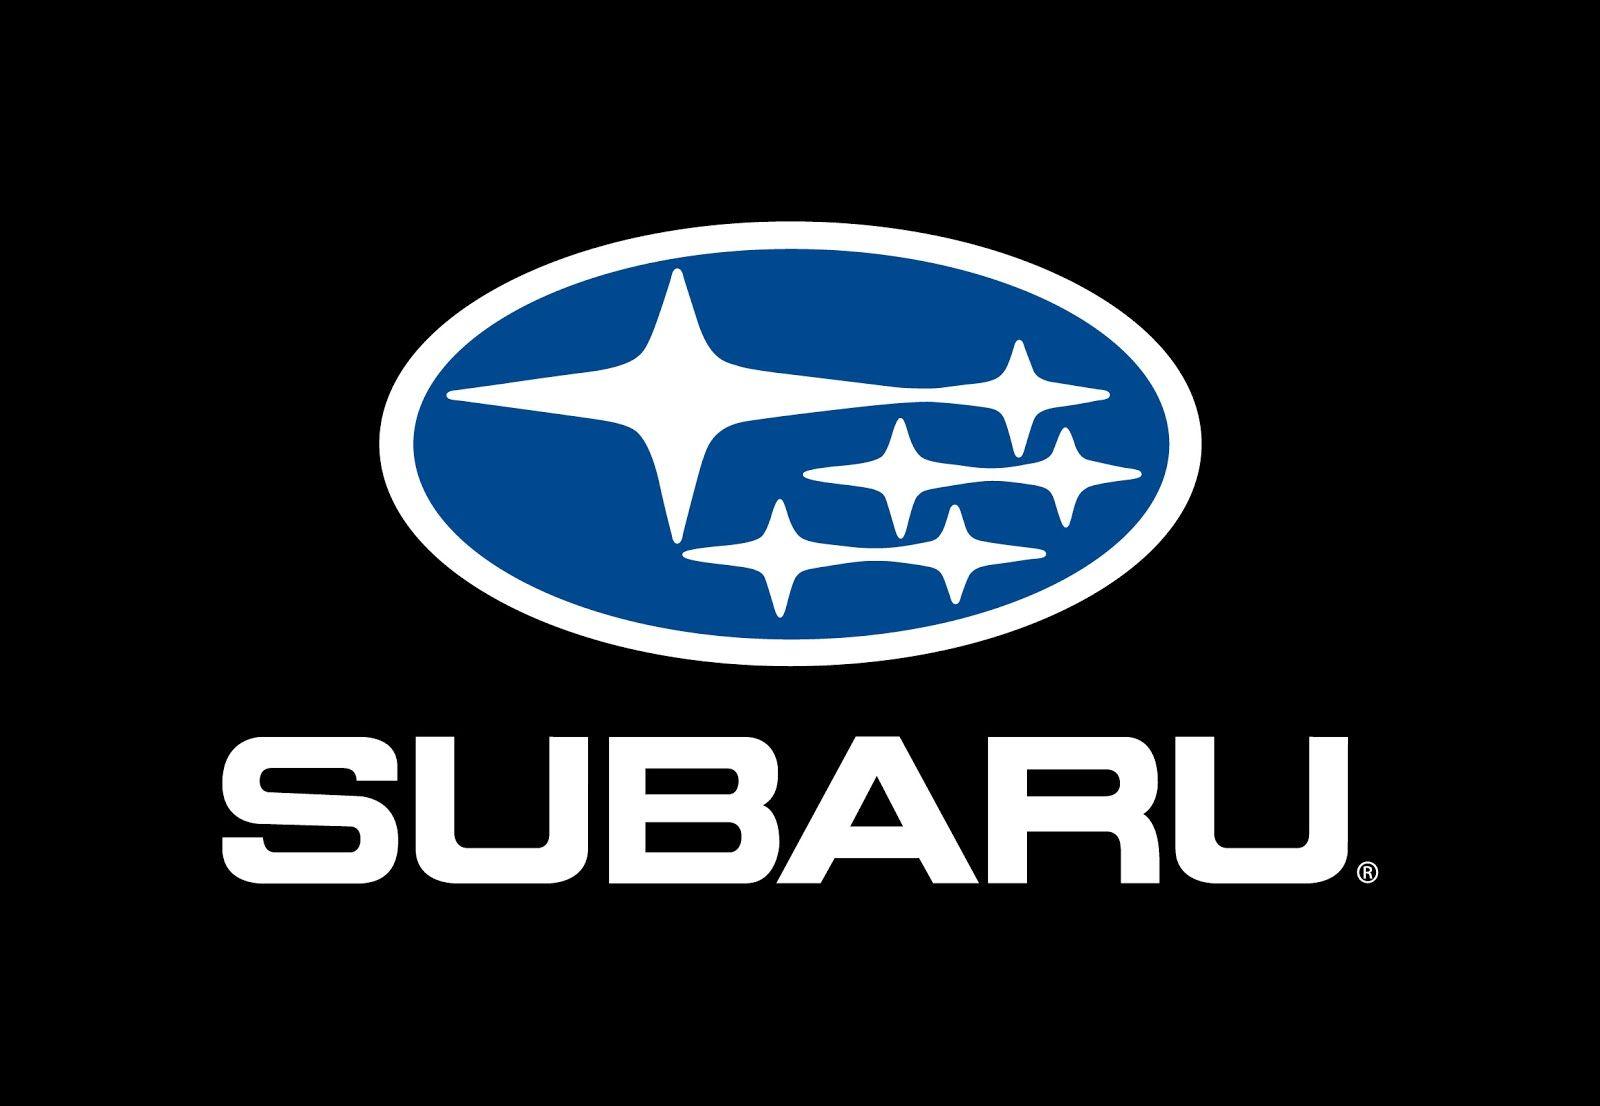 Black and Blue Logo - Subaru Logo, Subaru Car Symbol Meaning and History. Car Brand Names.com